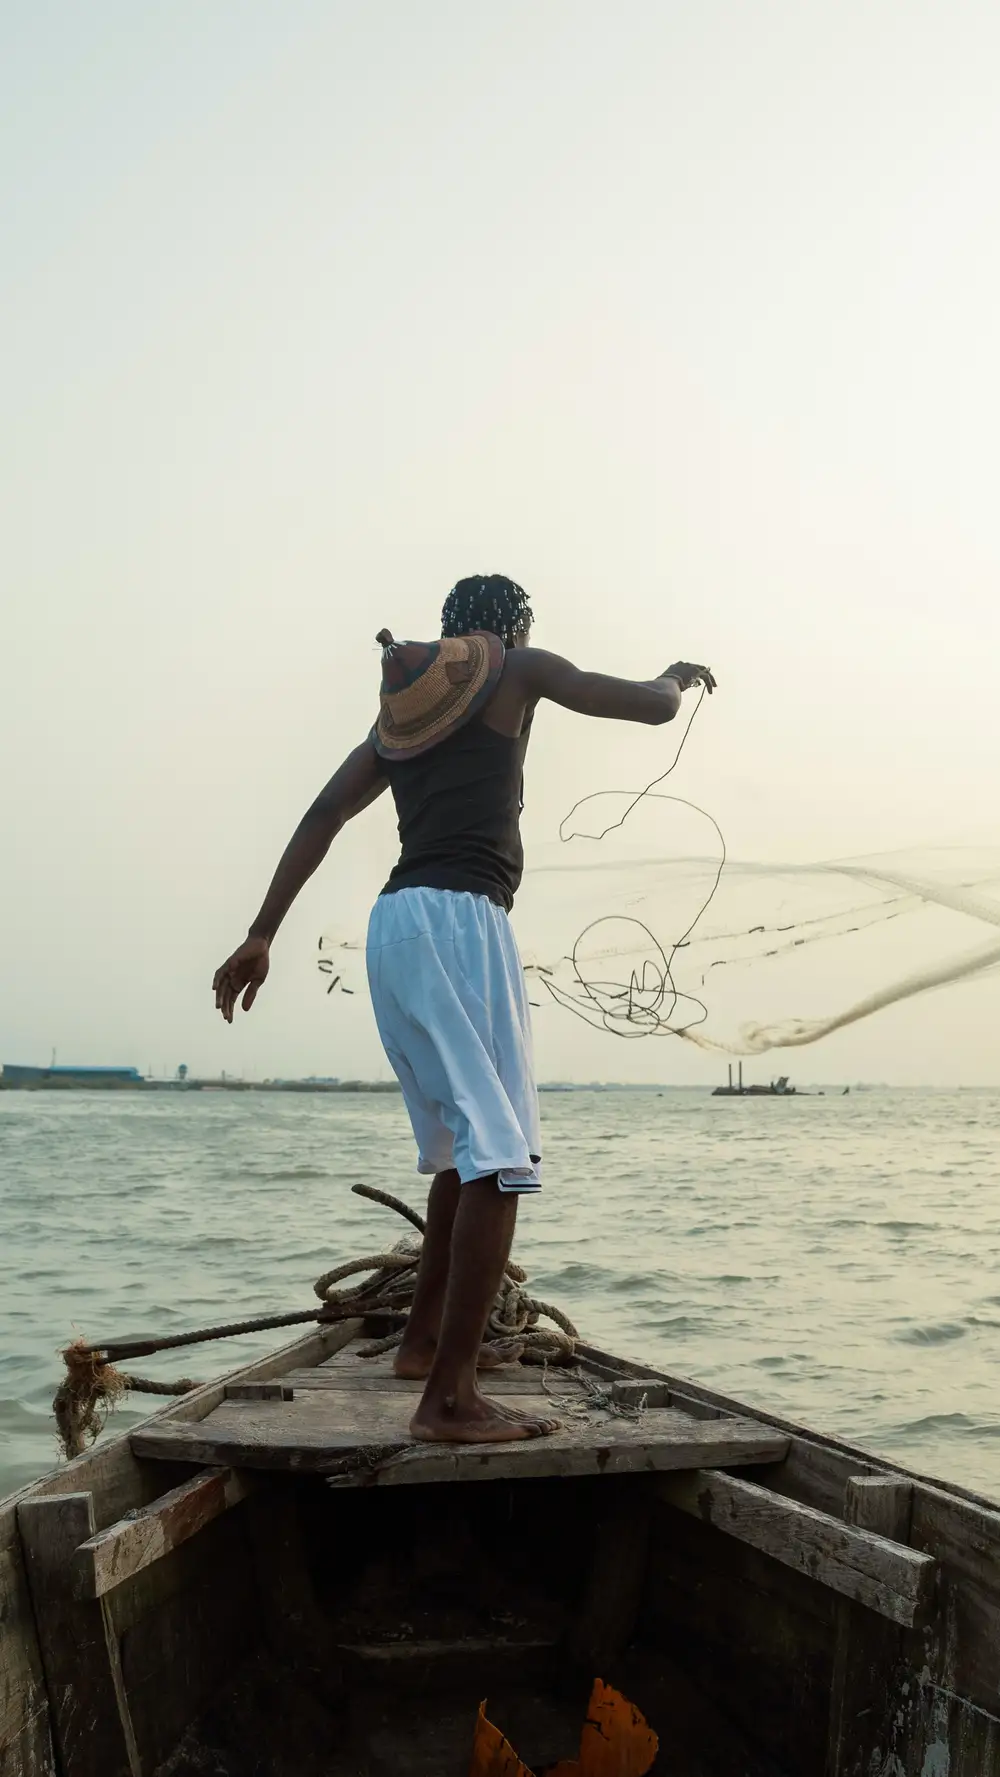 Man throwing fishing net